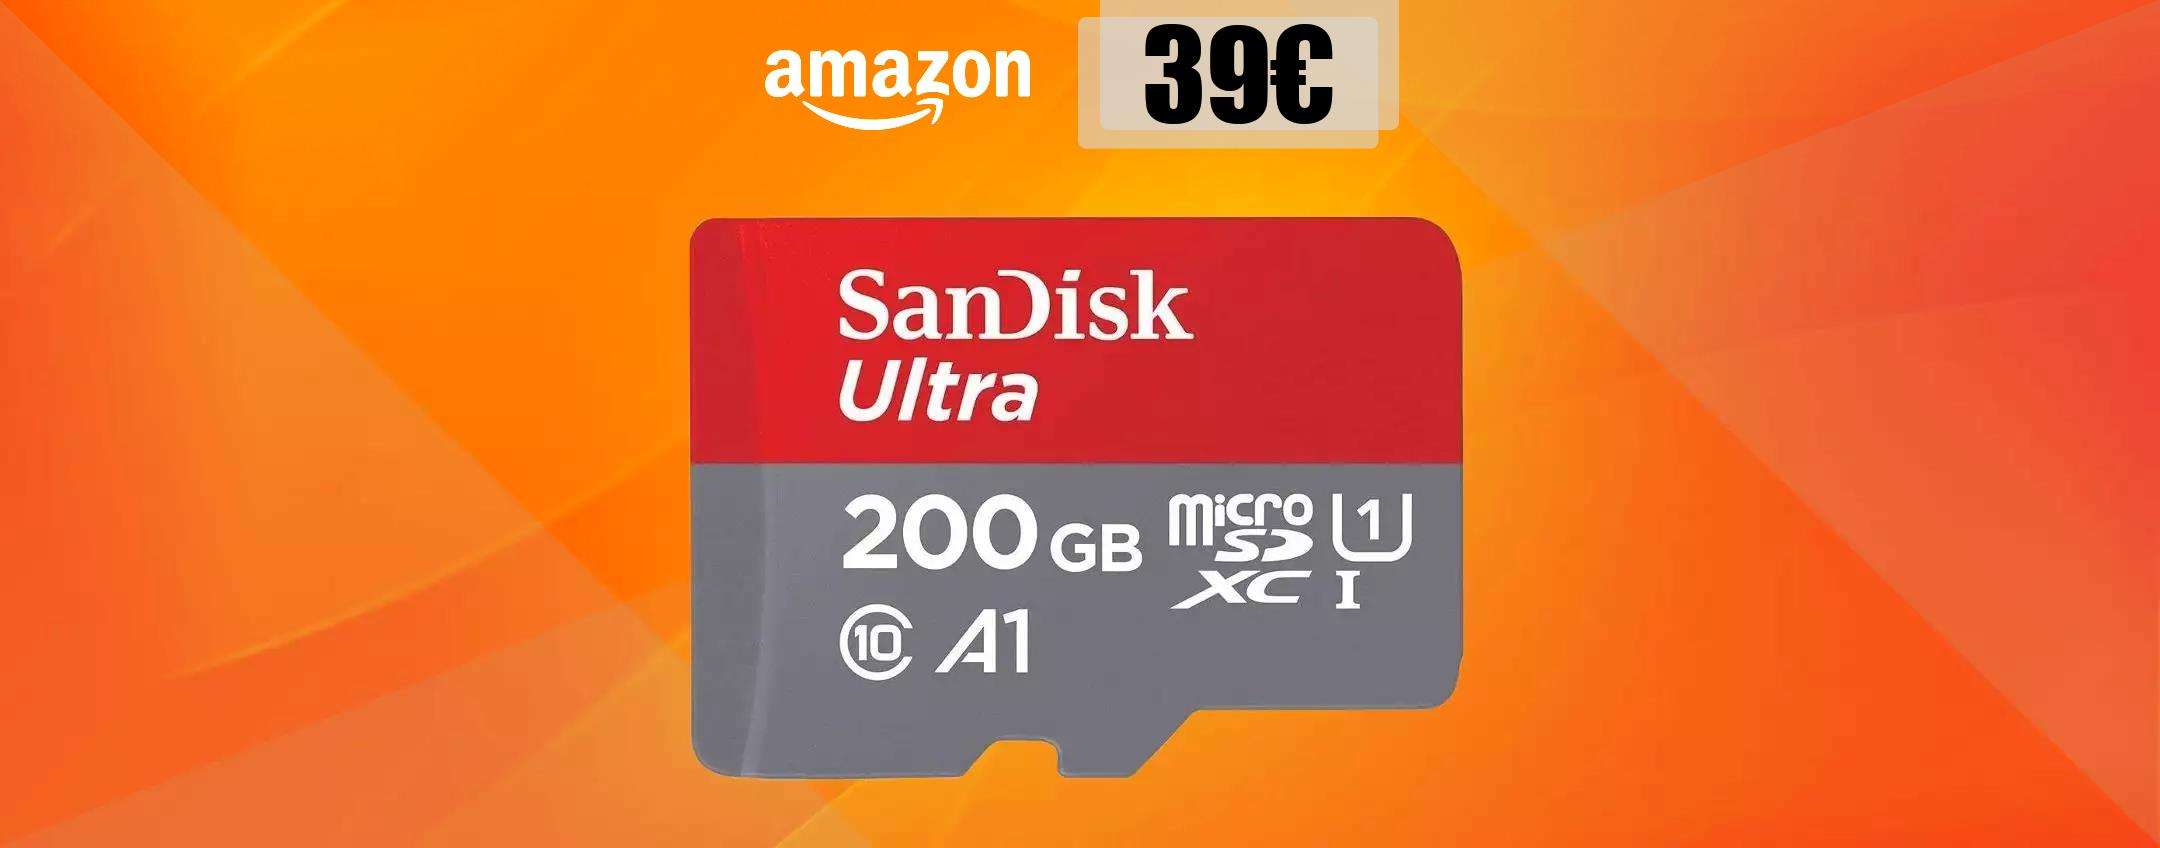 MicroSD 200GB Sandisk, tanta memoria e velocità al top: bastano 39€